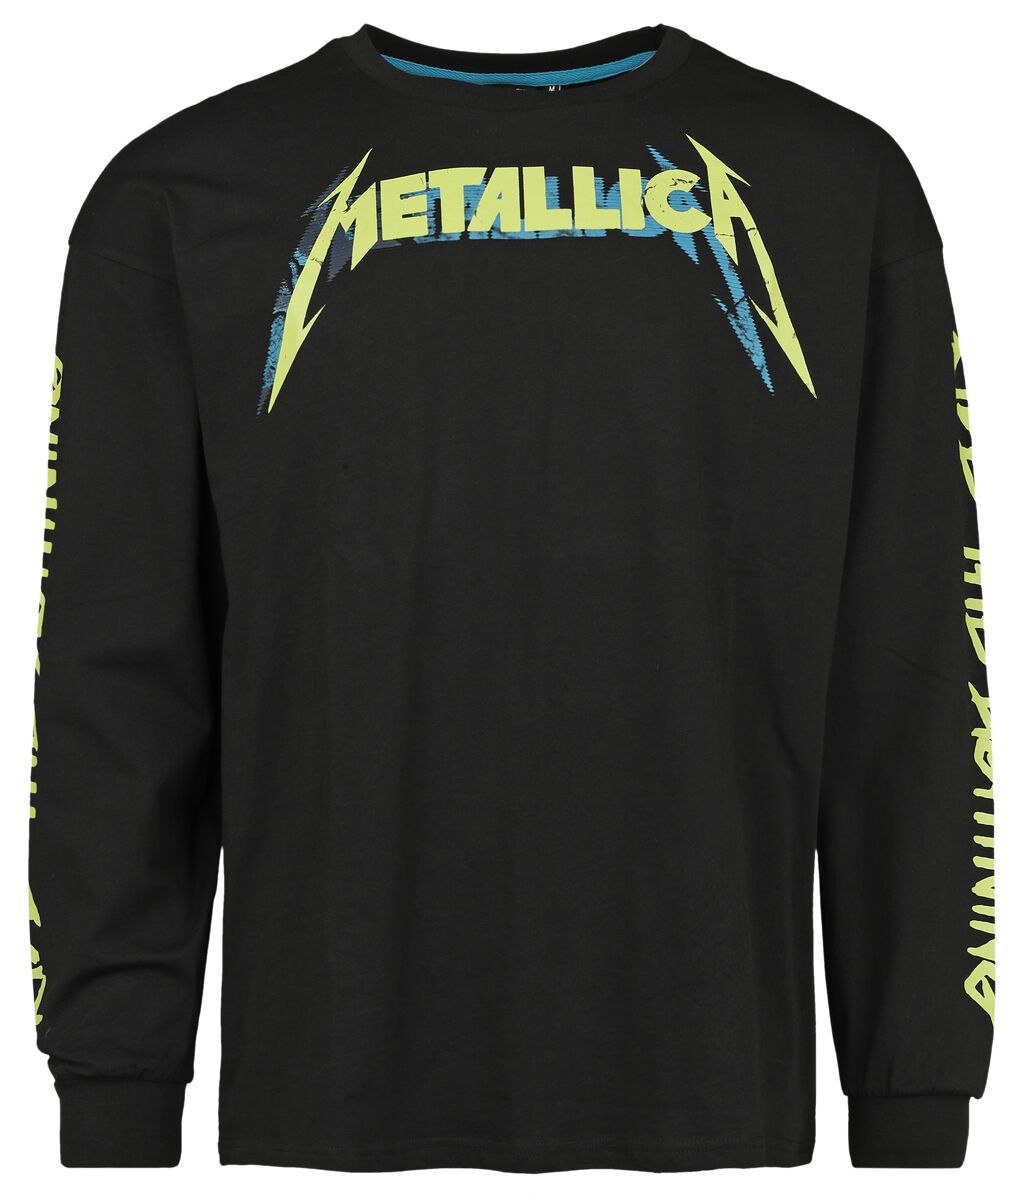 Metallica Langarmshirt - EMP Signature Collection - Oversize - S bis 3XL - für Männer - Größe XXL - schwarz  - EMP exklusives Merchandise! von metallica